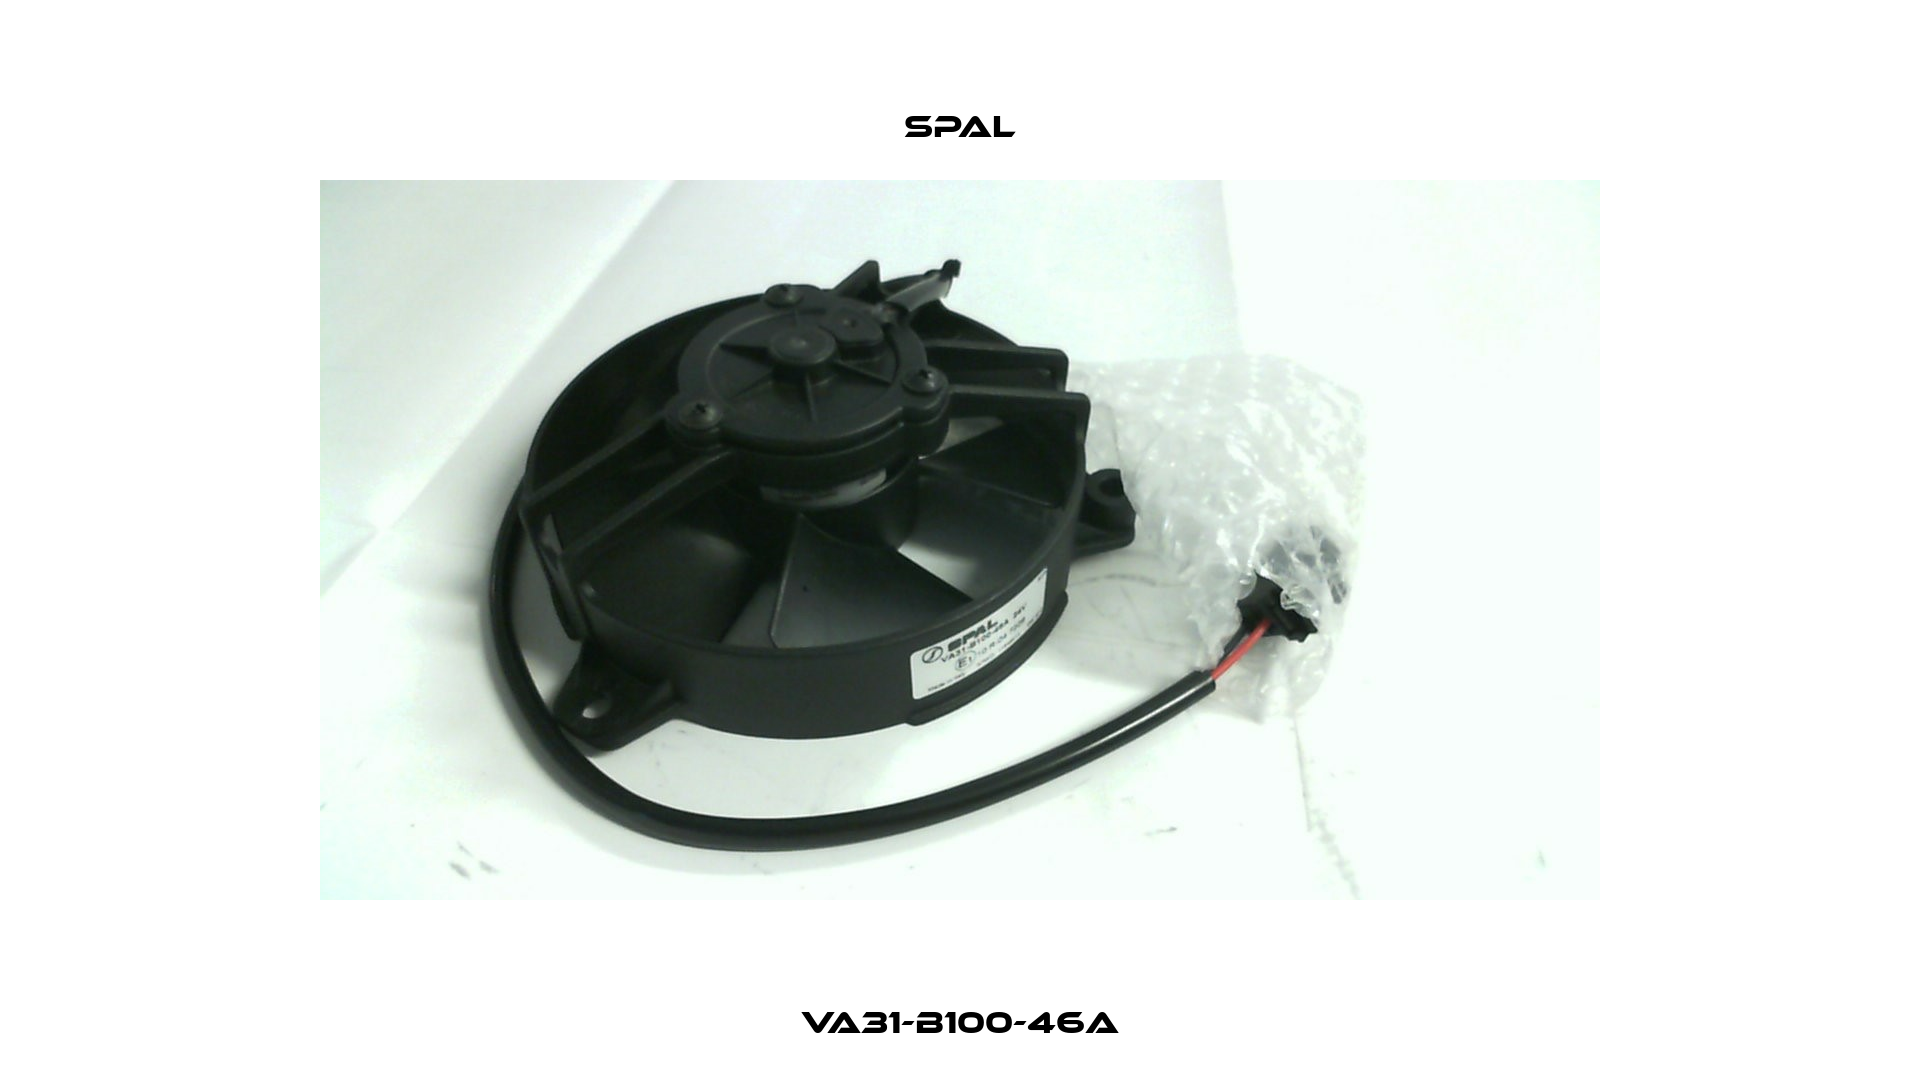 VA31-B100-46A SPAL